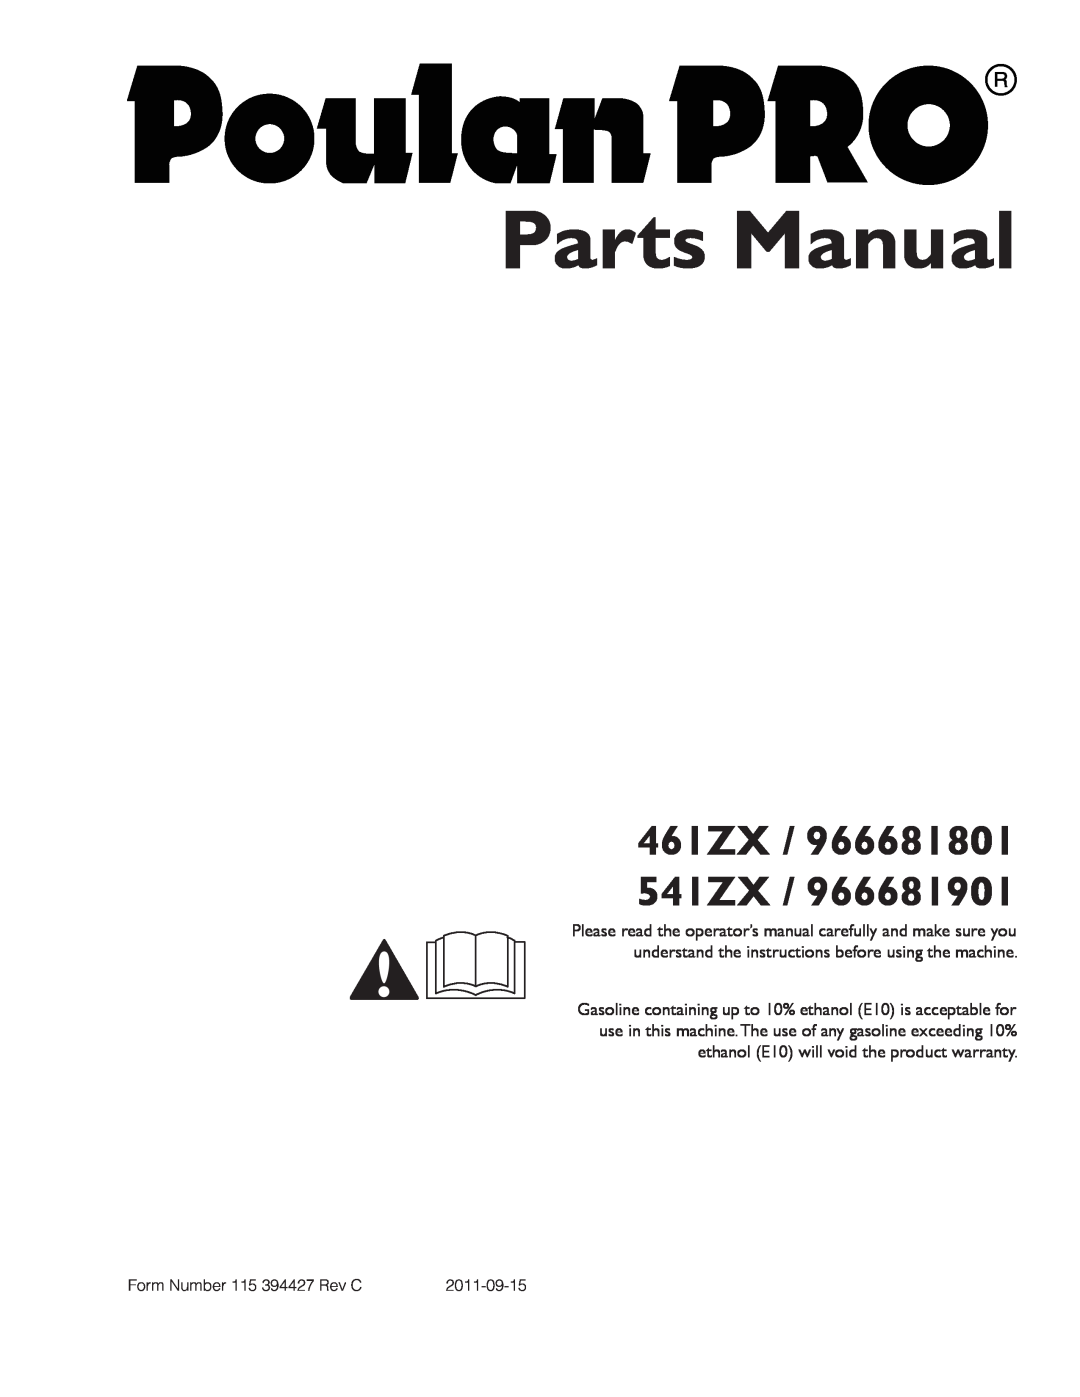 Poulan warranty Parts Manual, 461ZX / 966681801 541ZX 